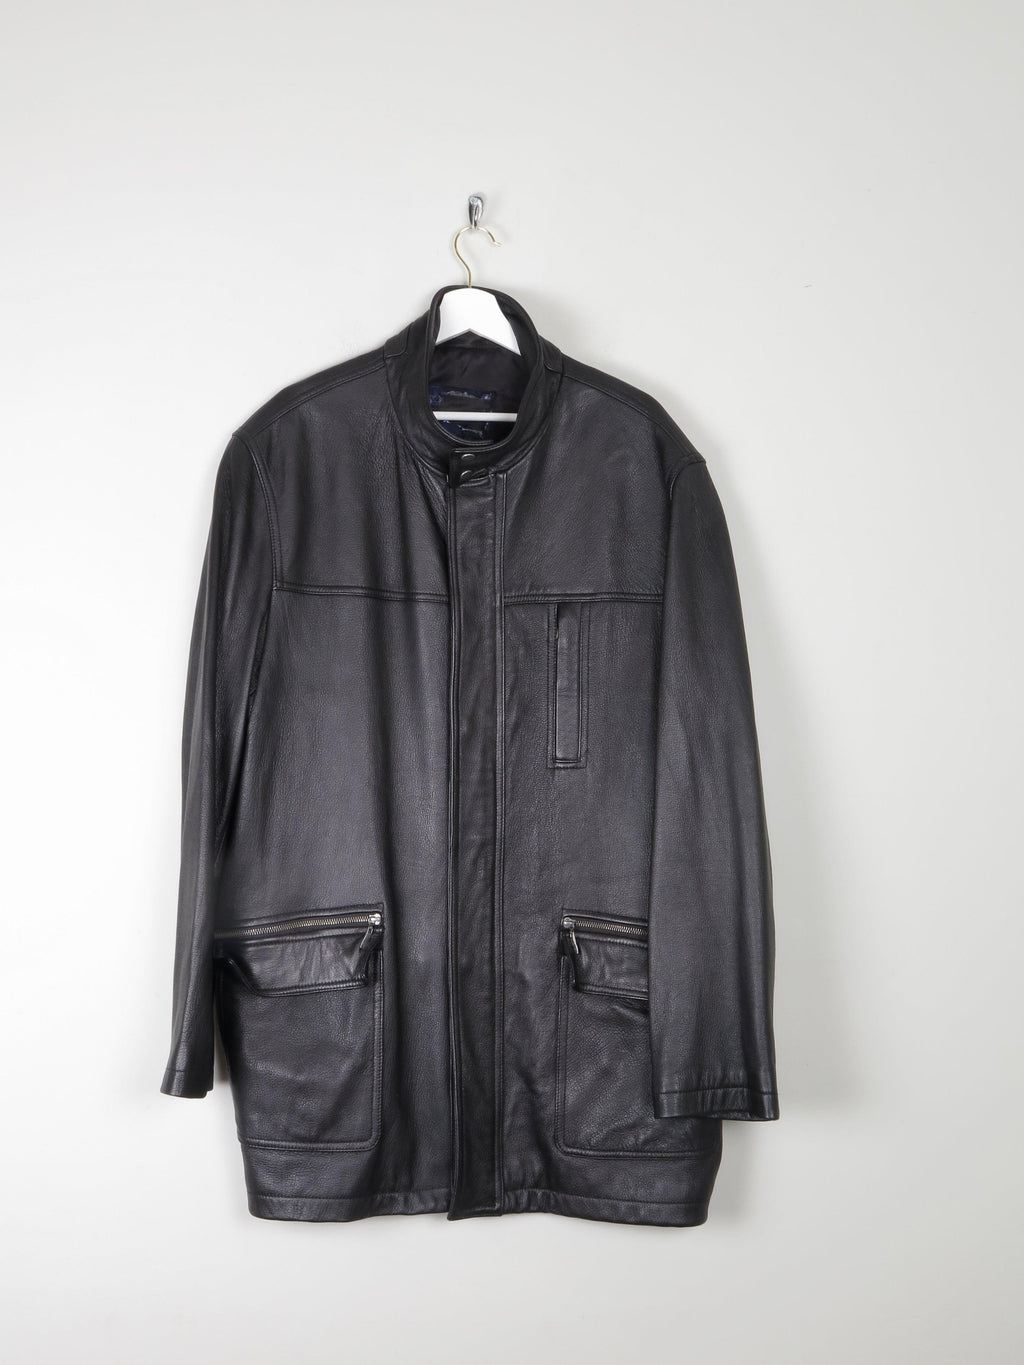 Men’s Black Leather Parka Style Long Jacket L - The Harlequin